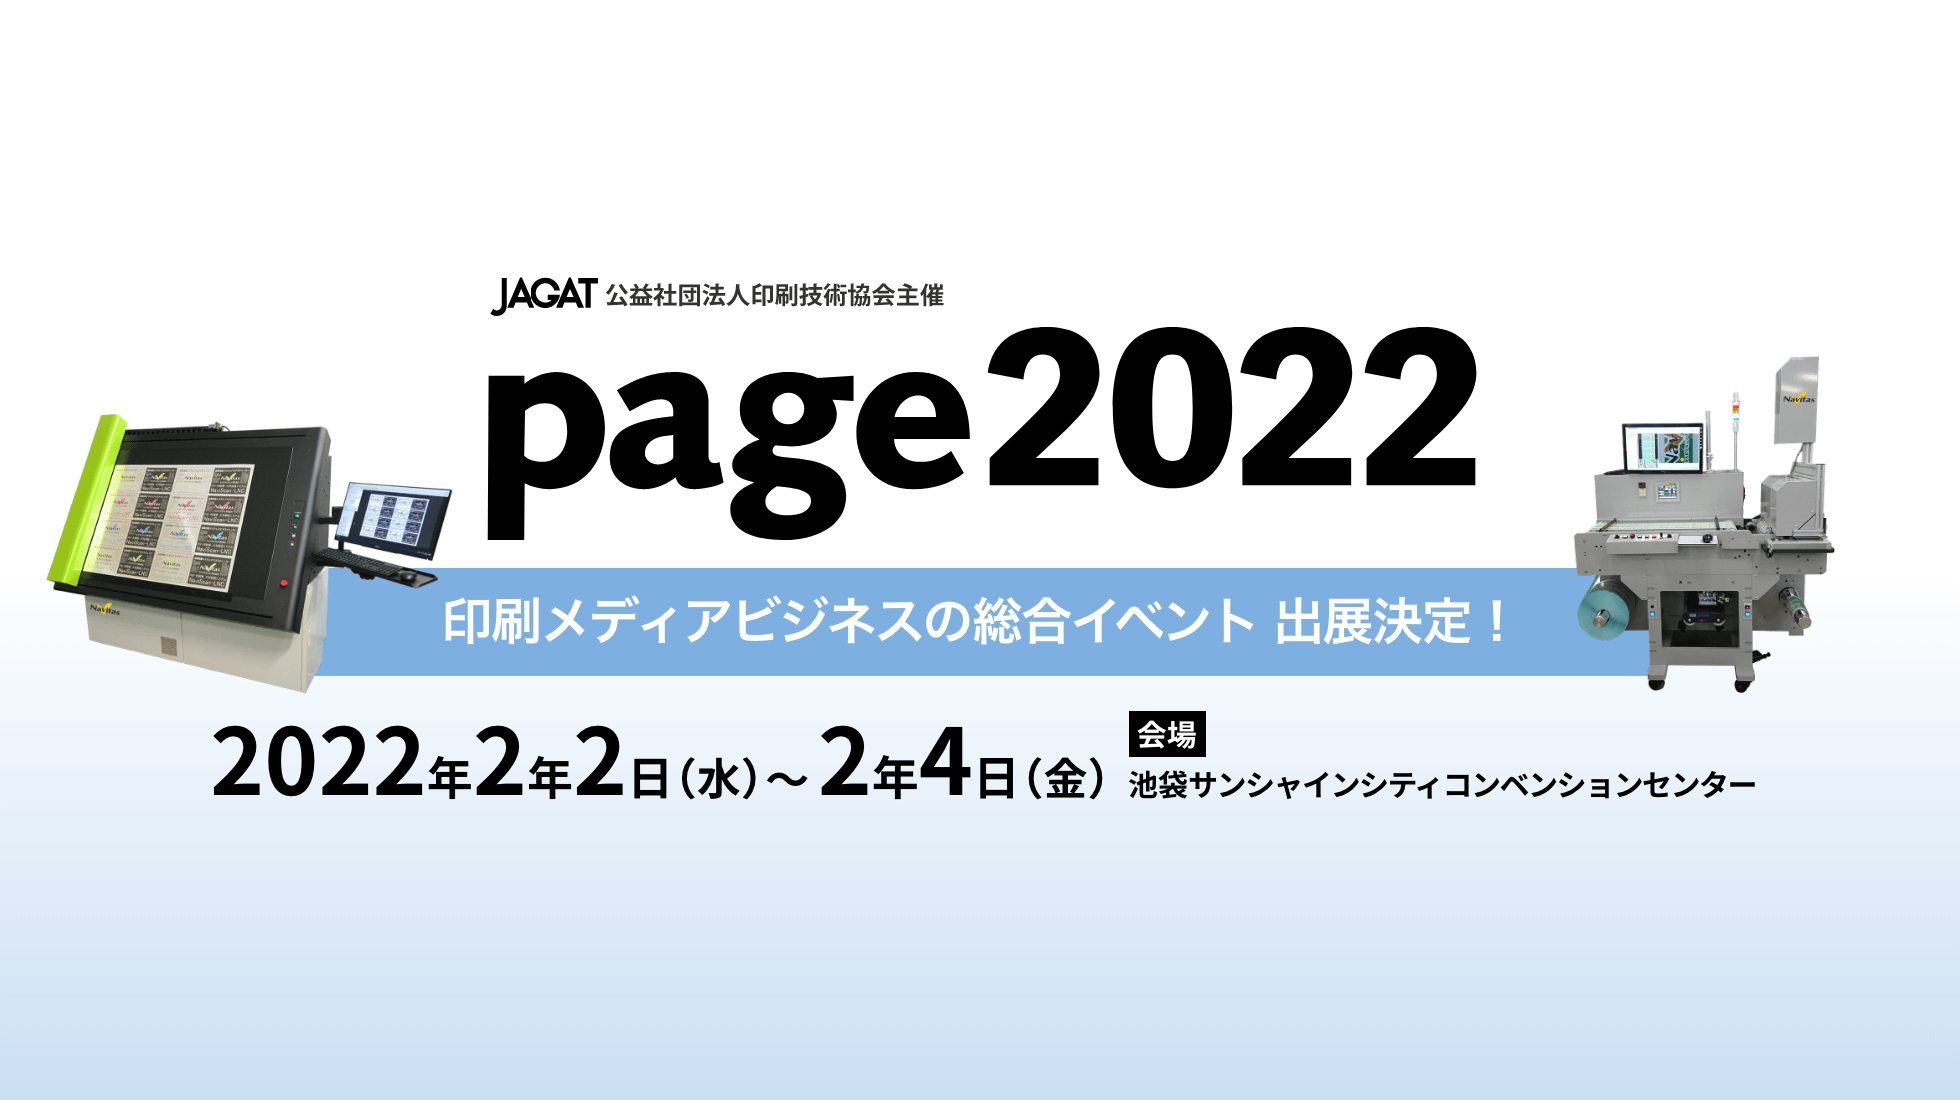 2022年2月2日～2月4日 page2022に出展決定！